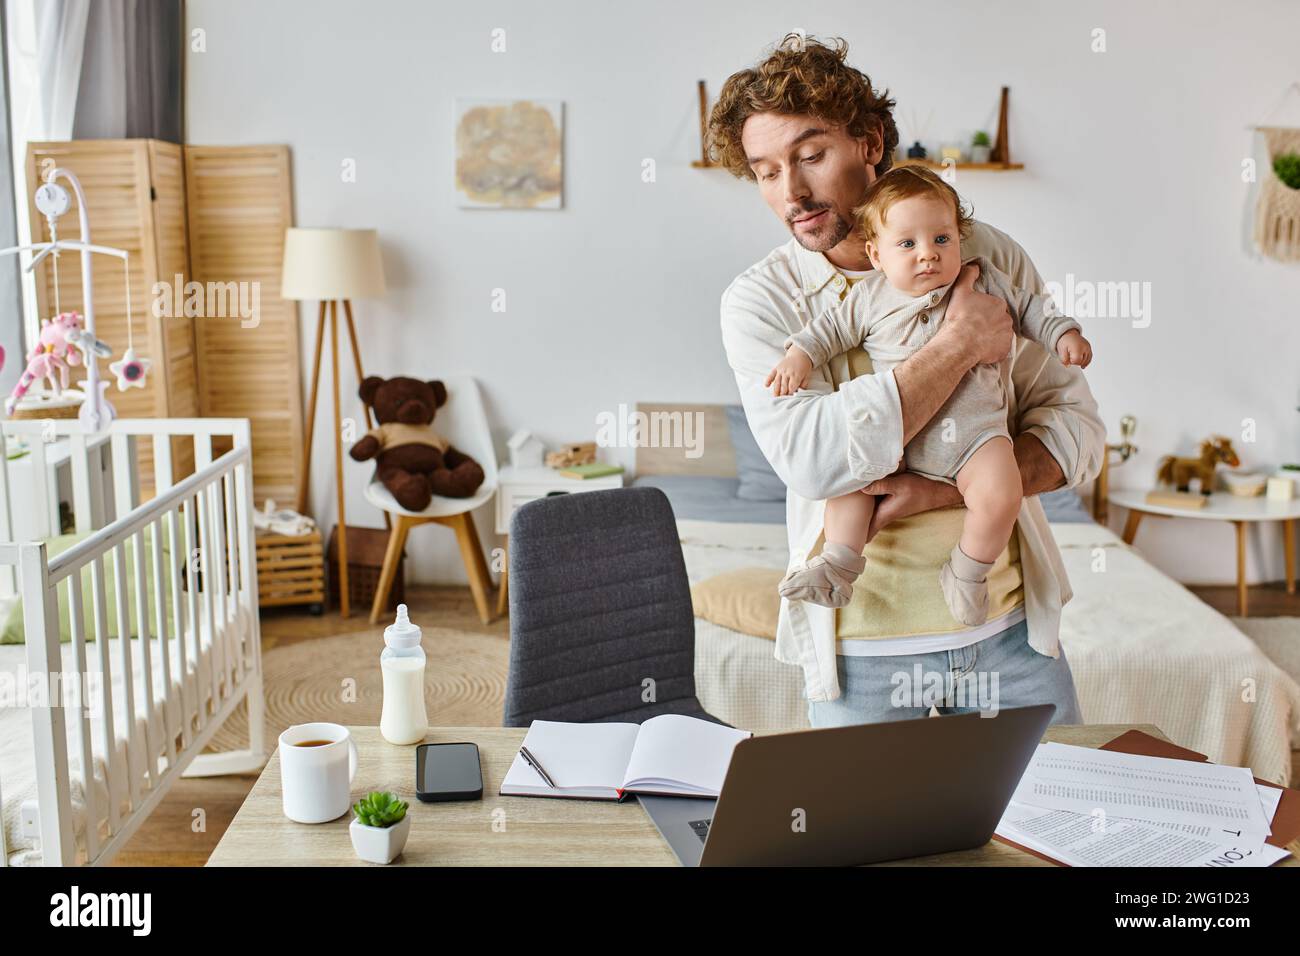 Viel beschäftigter alleinstehender Vater hält den Säugling fest und sieht sich Papiere in der Nähe von Gadgets und Babyflasche auf dem Schreibtisch an Stockfoto